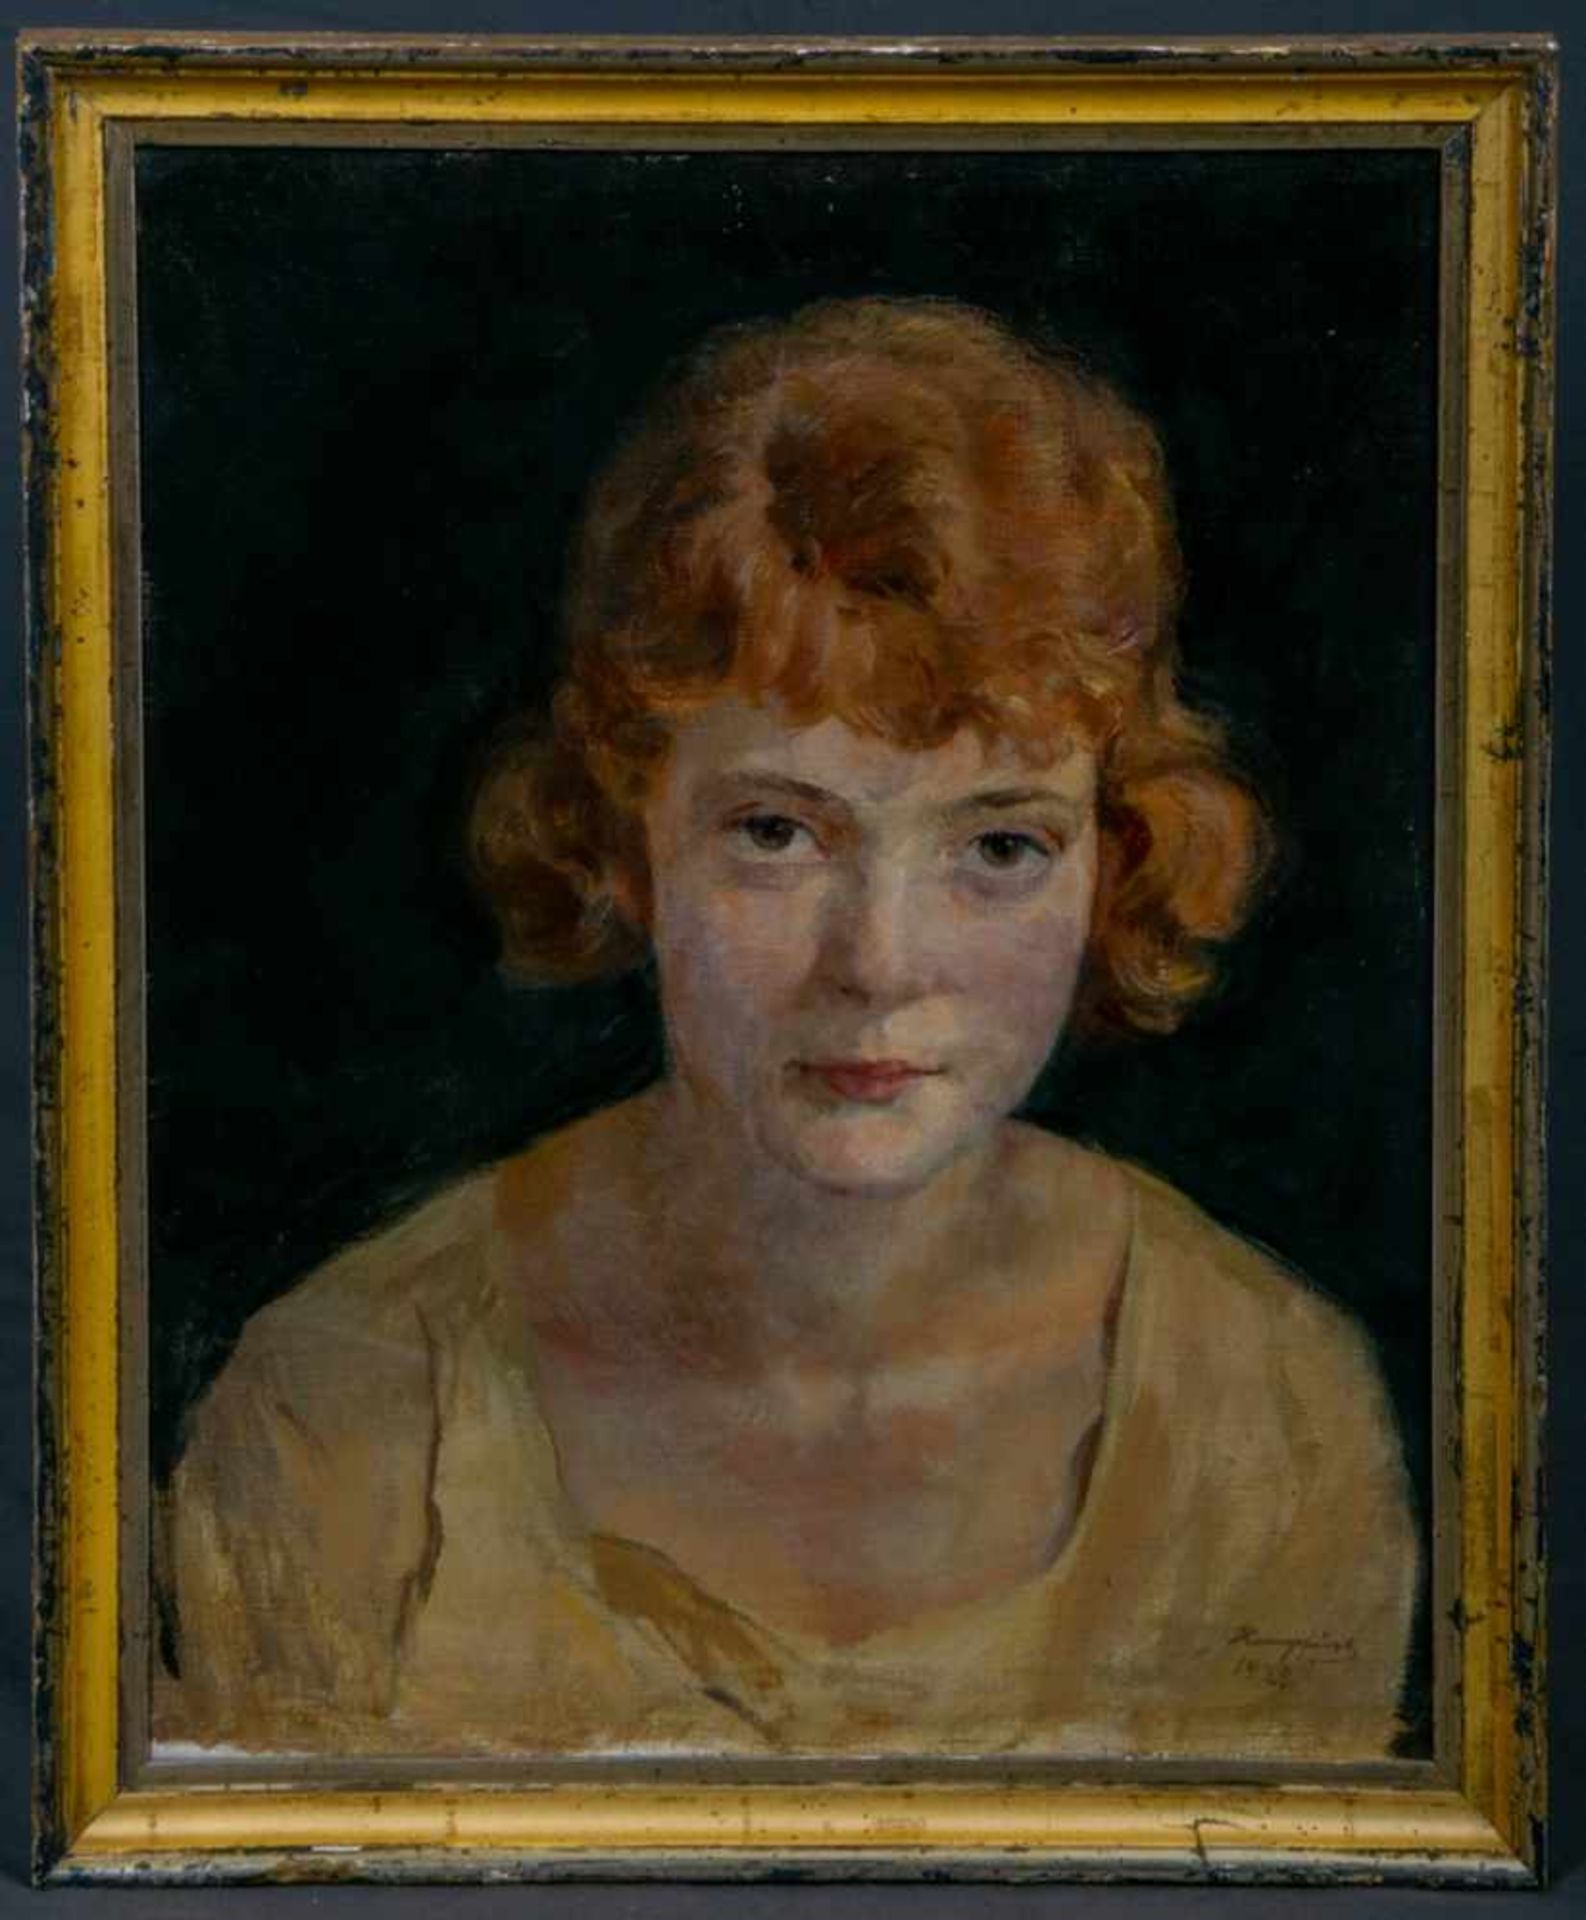 "Porträt einer jungen rothaarigen Dame" mit forderndem Blick, gekonnt in Szene gesetzt, gemaltes